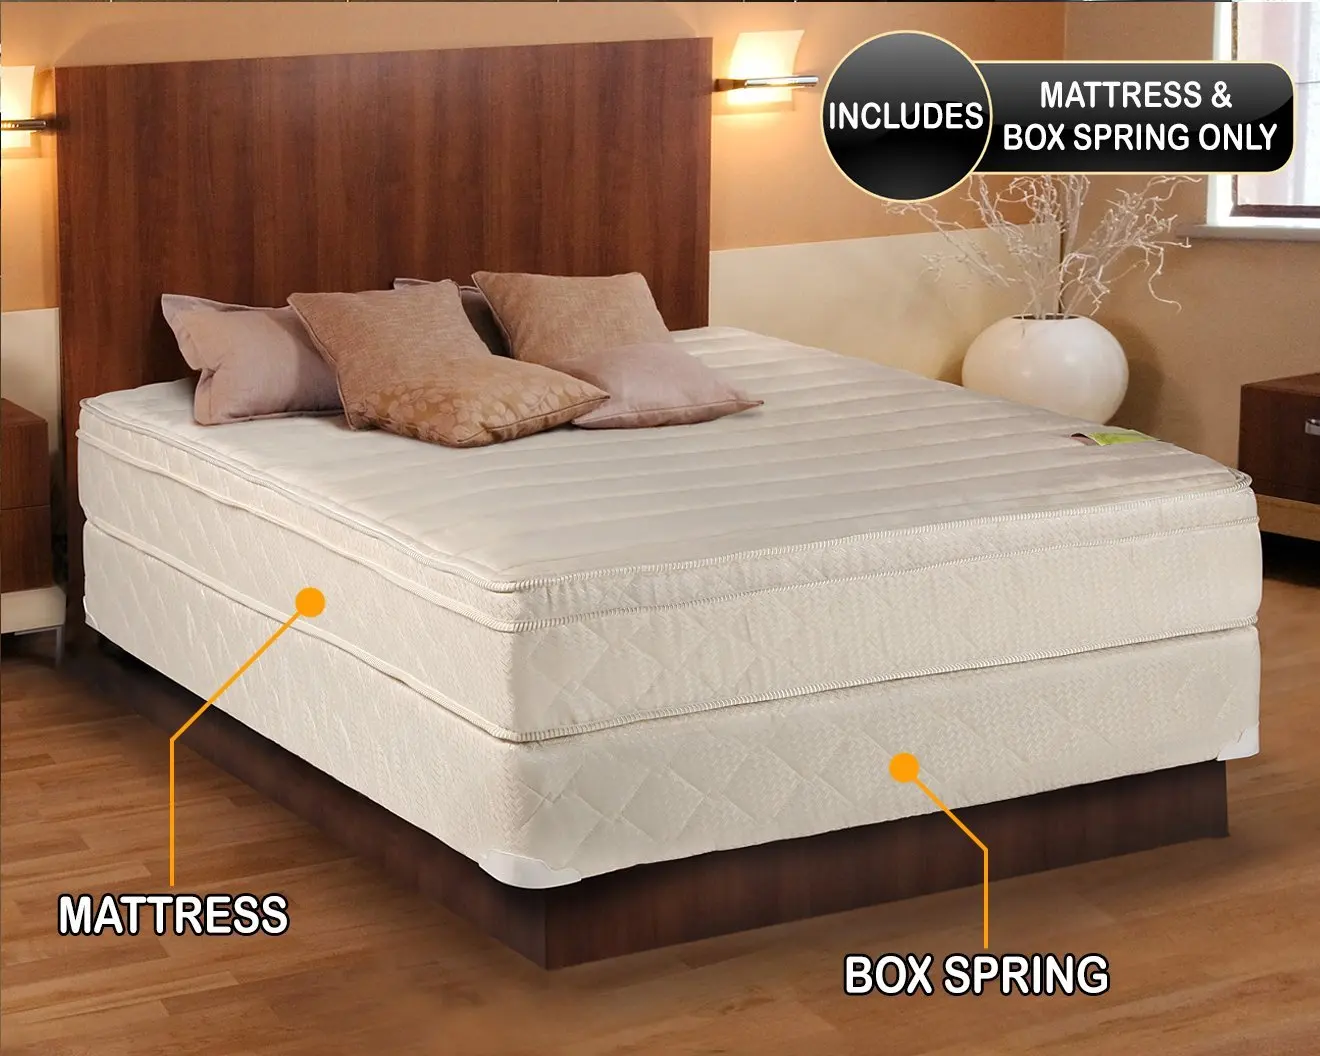 cheap mattress and box spring set queen